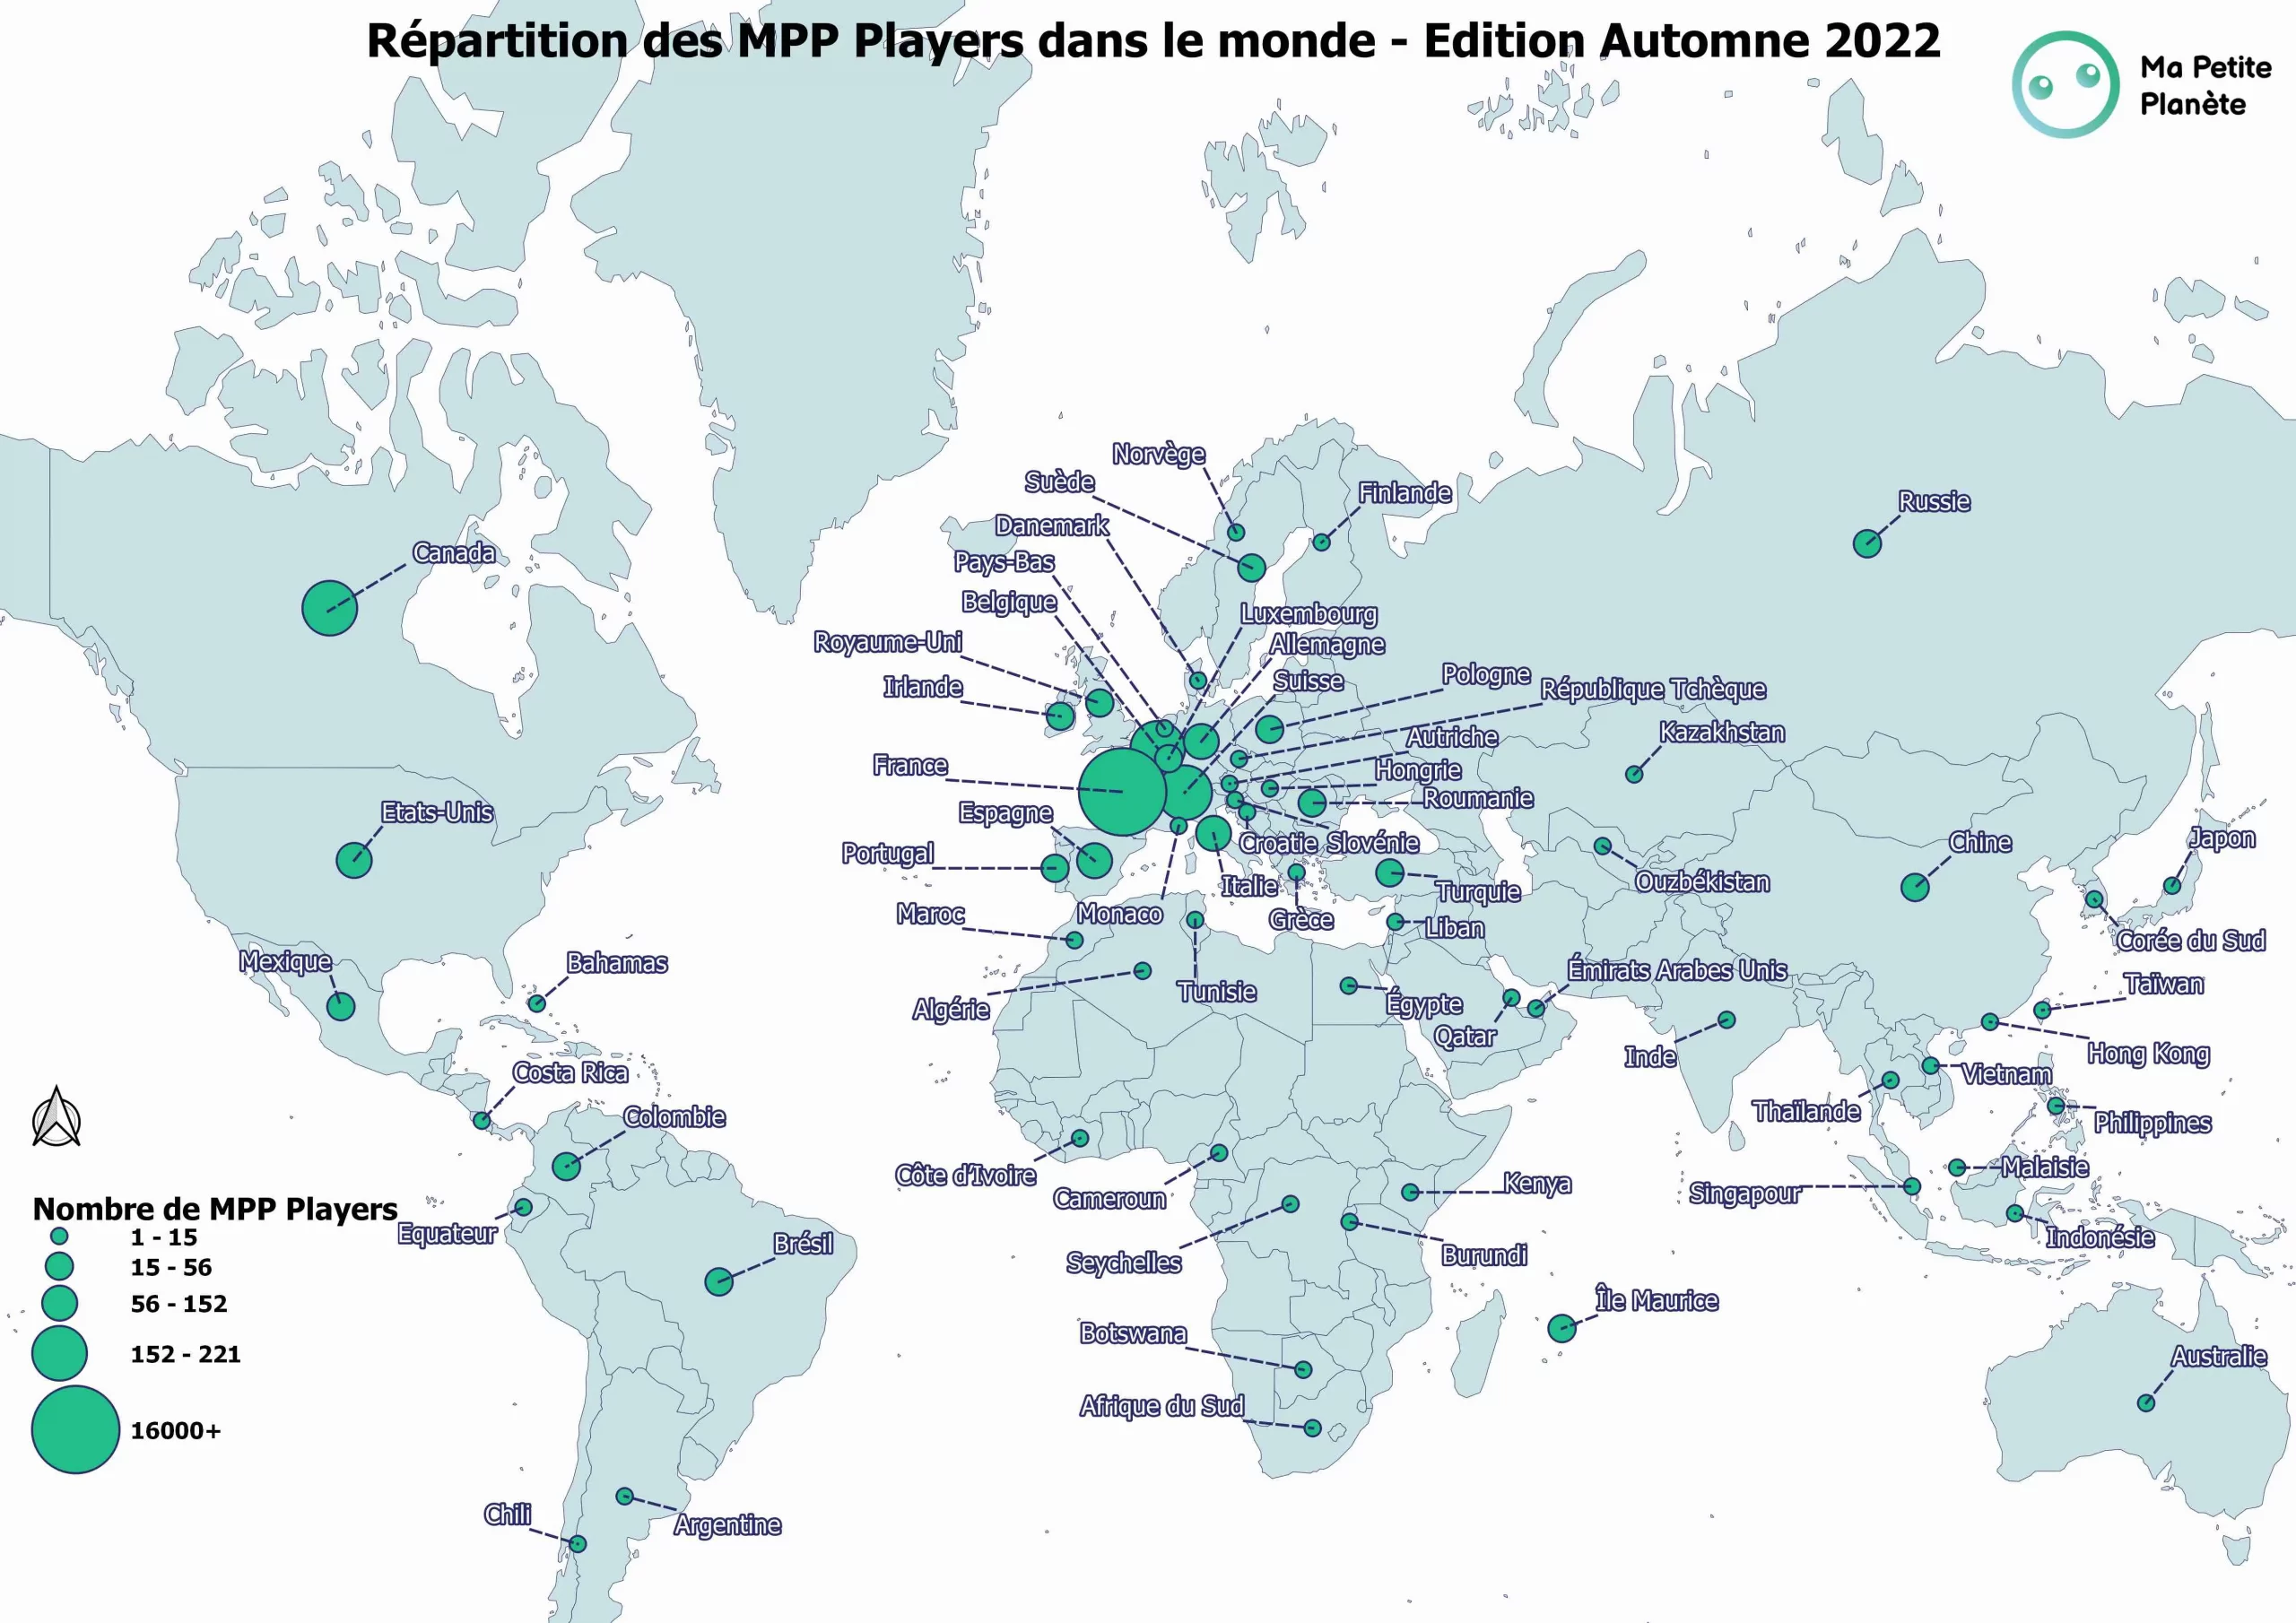 Répartition des MPP Players dans le monde lors de l'édition du Printemps 2022